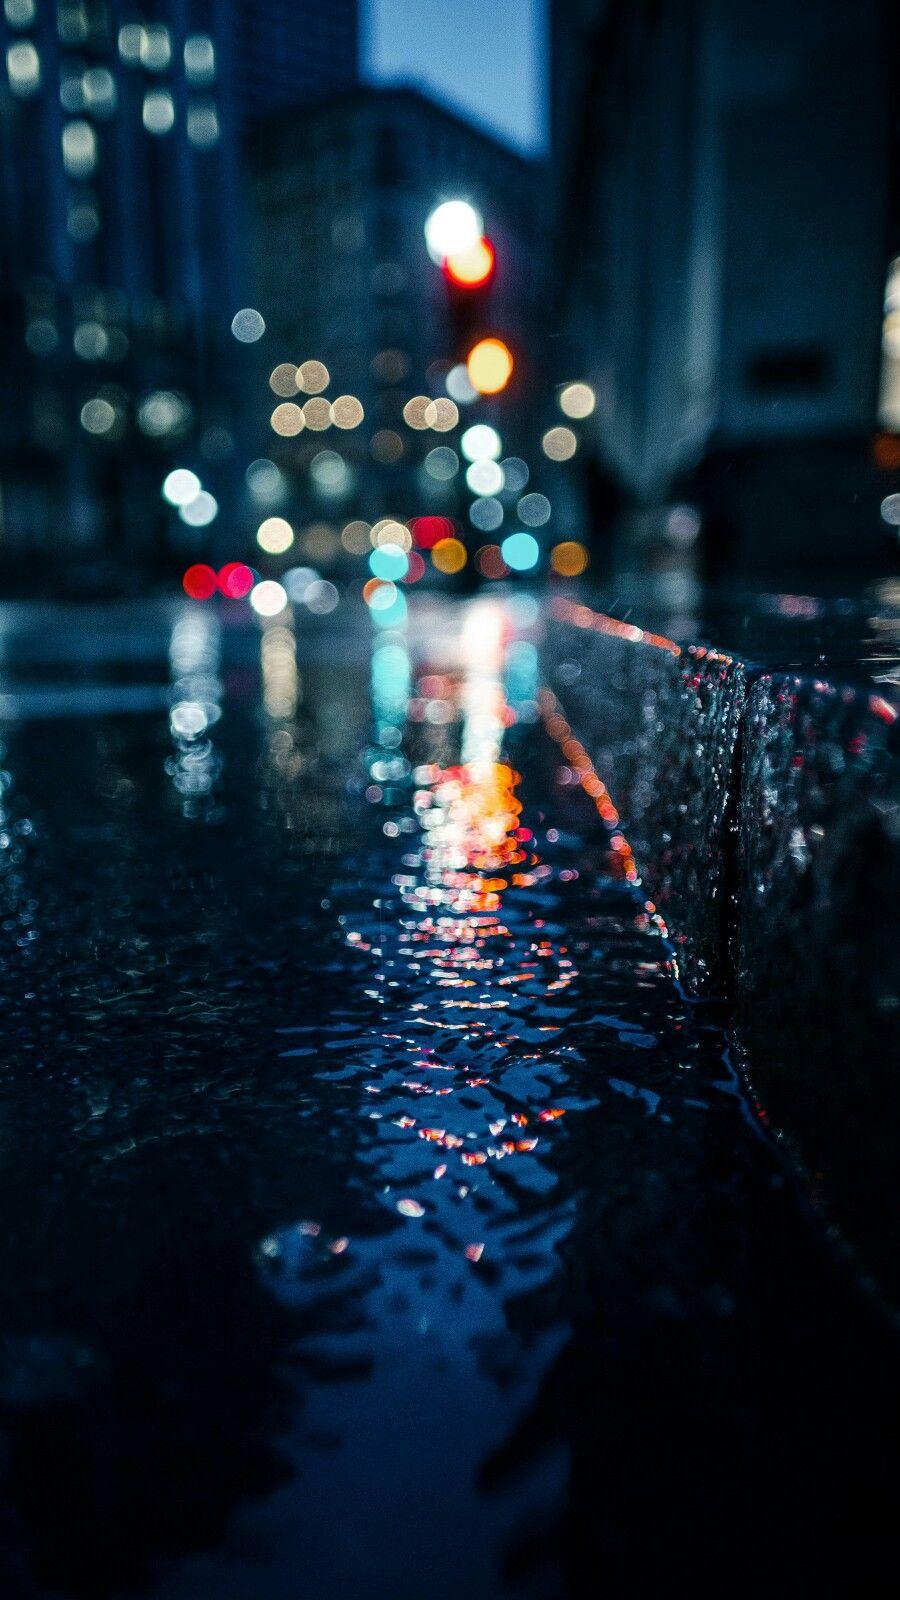 دانلود تصویر زمینه سامسونگ عکس جاده بارانی در شب